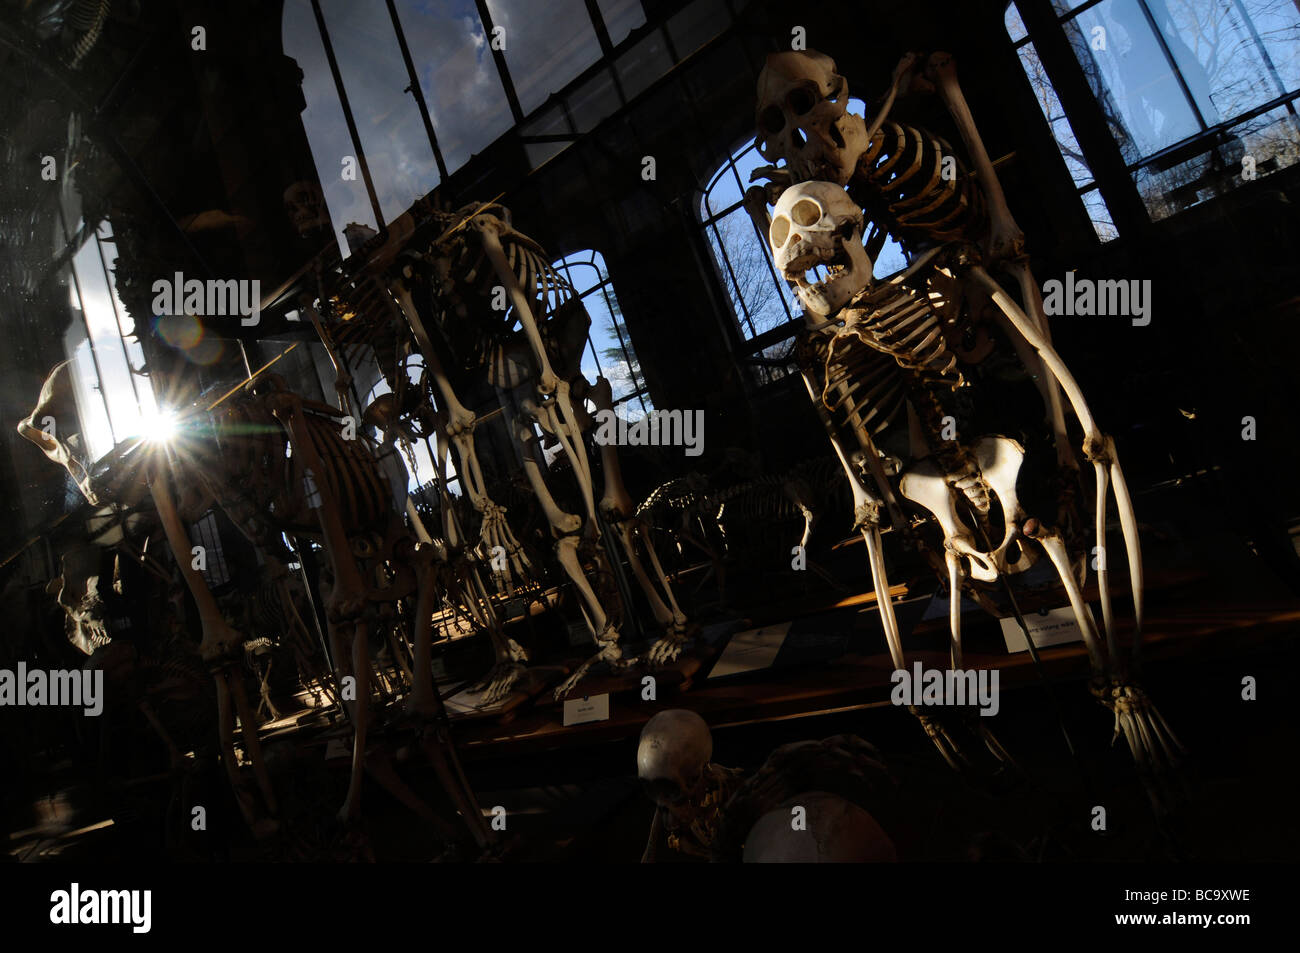 Des squelettes et des crânes de primates exposés dans la grande galerie de l'évolution au musée de l'histoire nationale à Paris, France. Banque D'Images